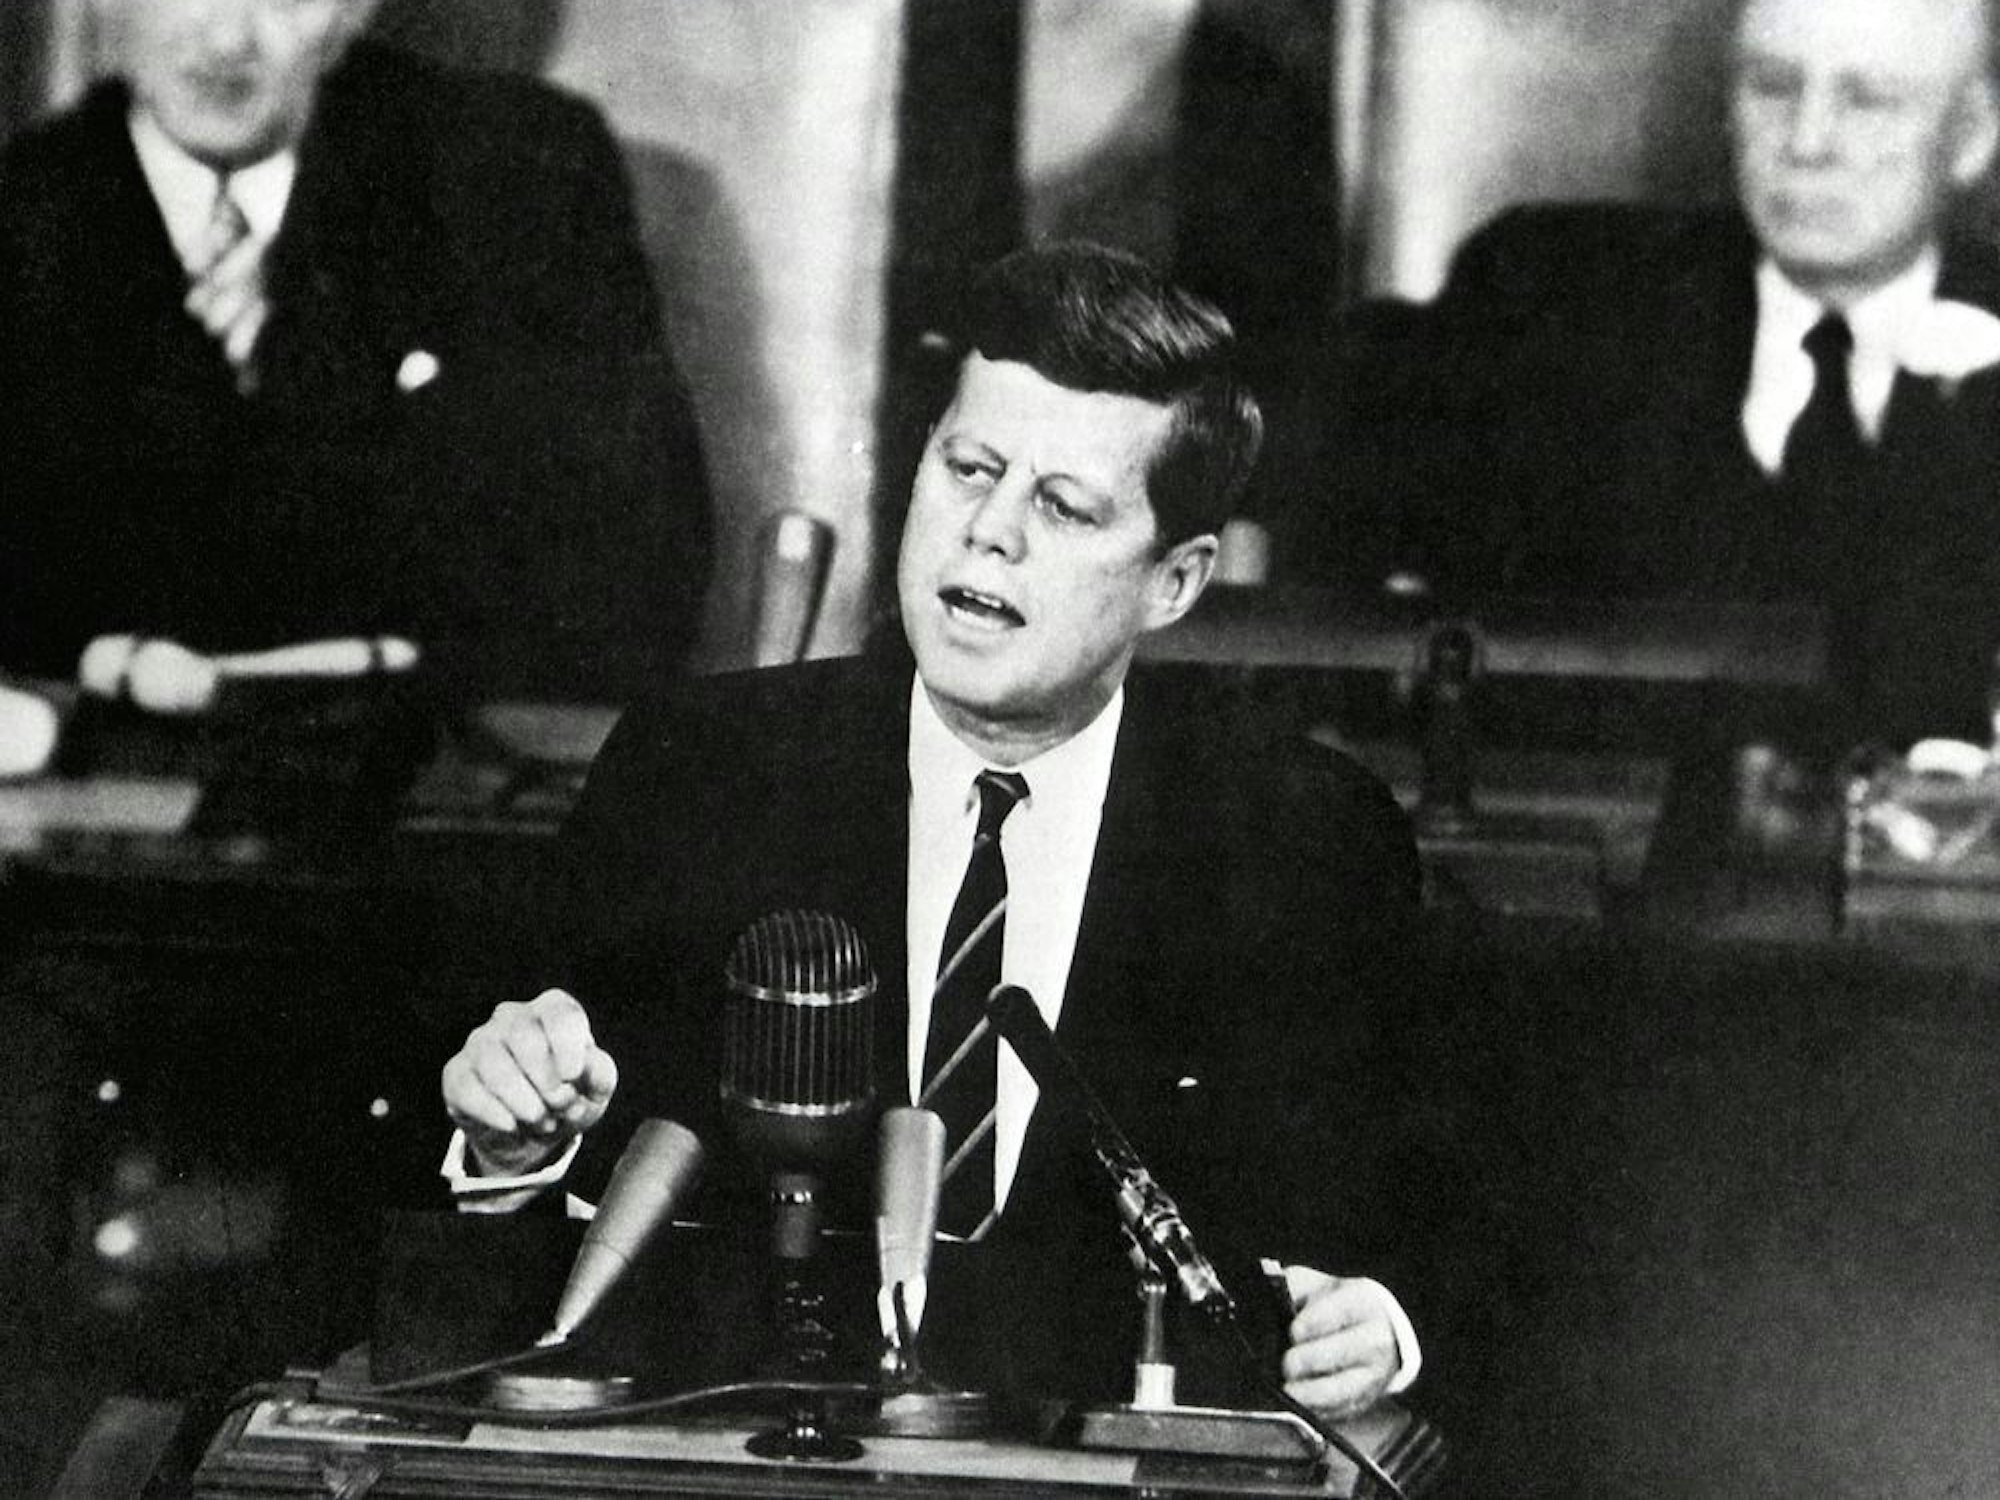 Der ehemalige US-Präsident John F. Kennedy bei einer Rede in Washington